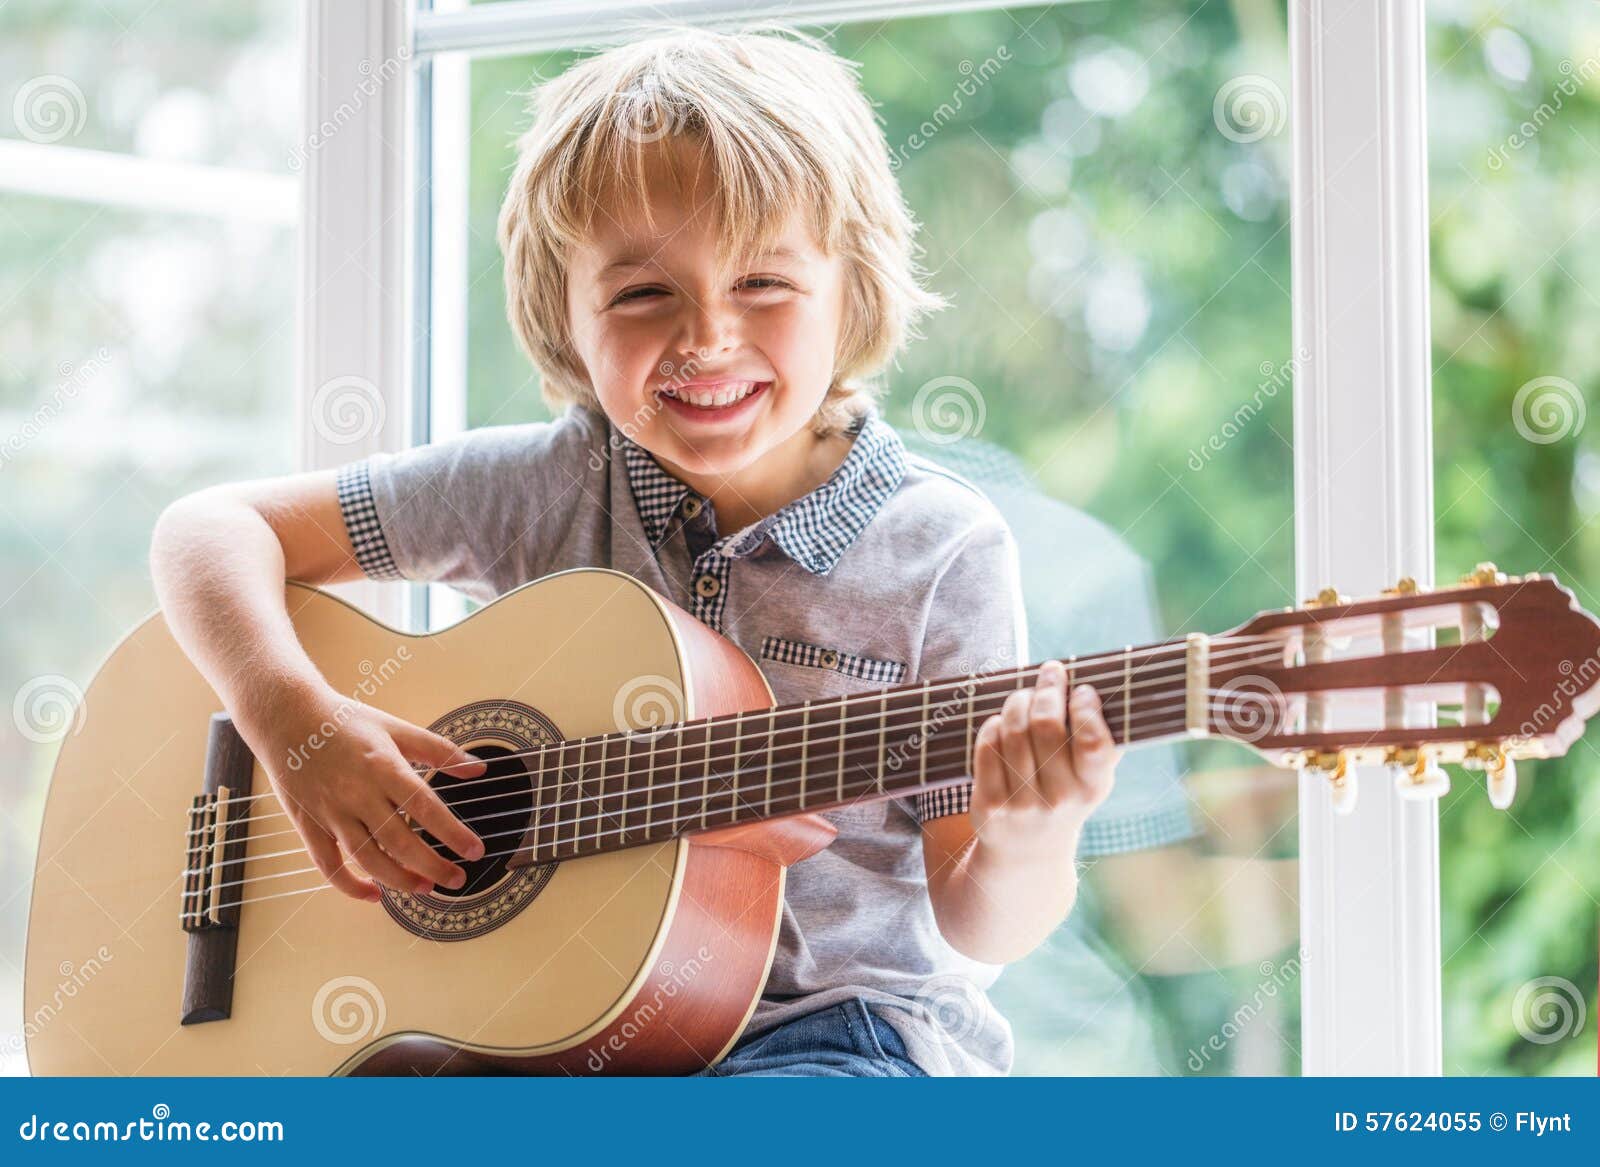 下载壁纸 男孩, 音乐, 吉他 免费为您的桌面分辨率的壁纸 2595x1730 — 图片 №580320